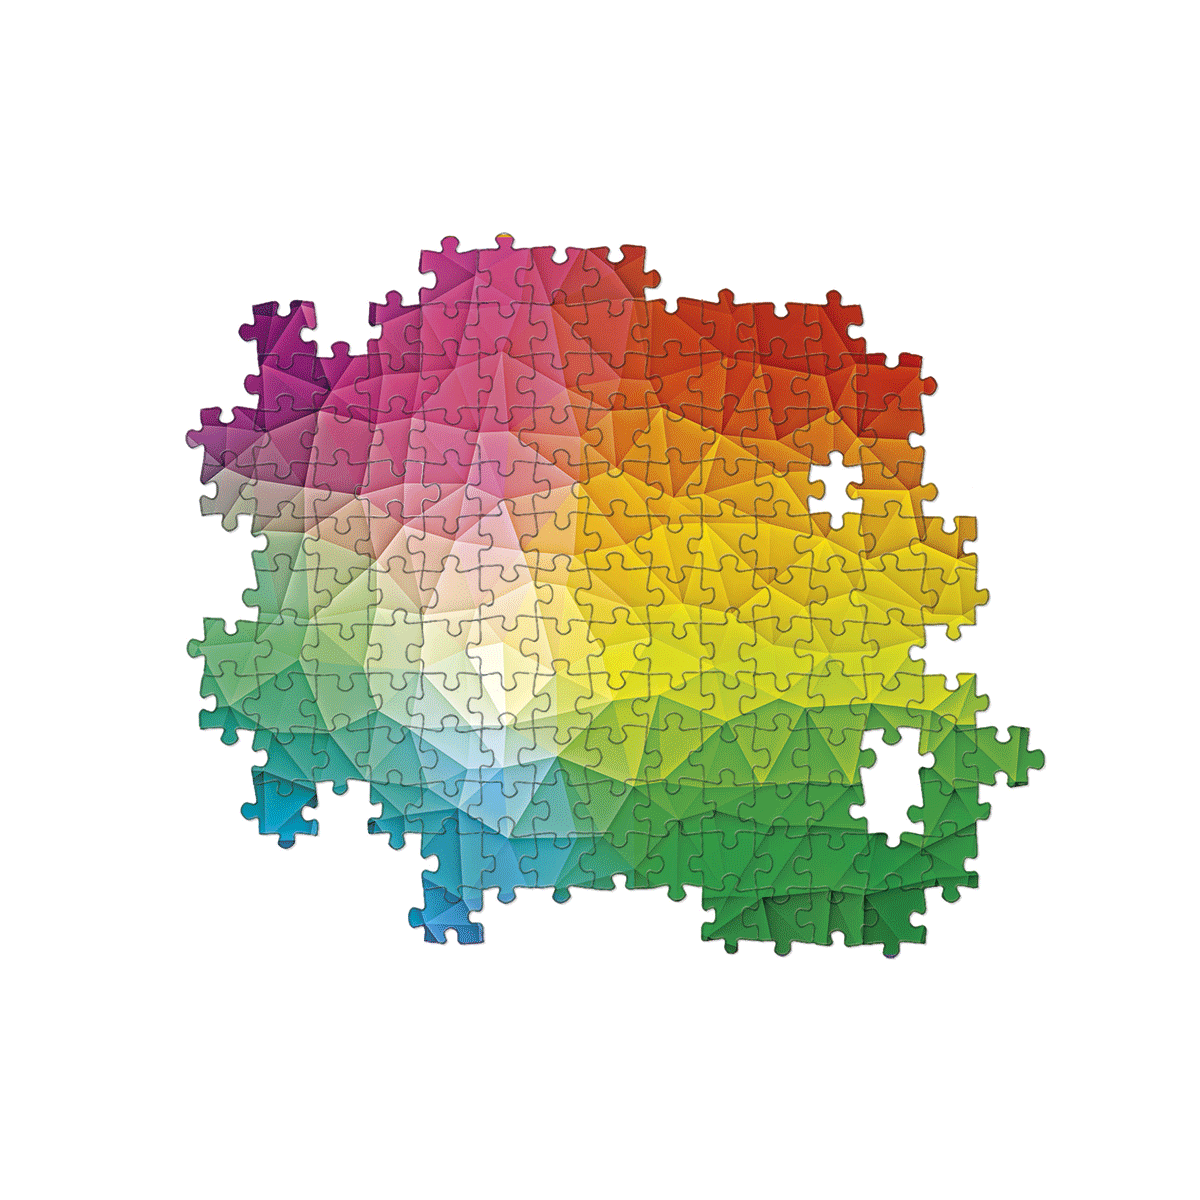 Clementoni puzzle colorboom collection - mosaic - puzzle adulti 1000 pezzi - CLEMENTONI